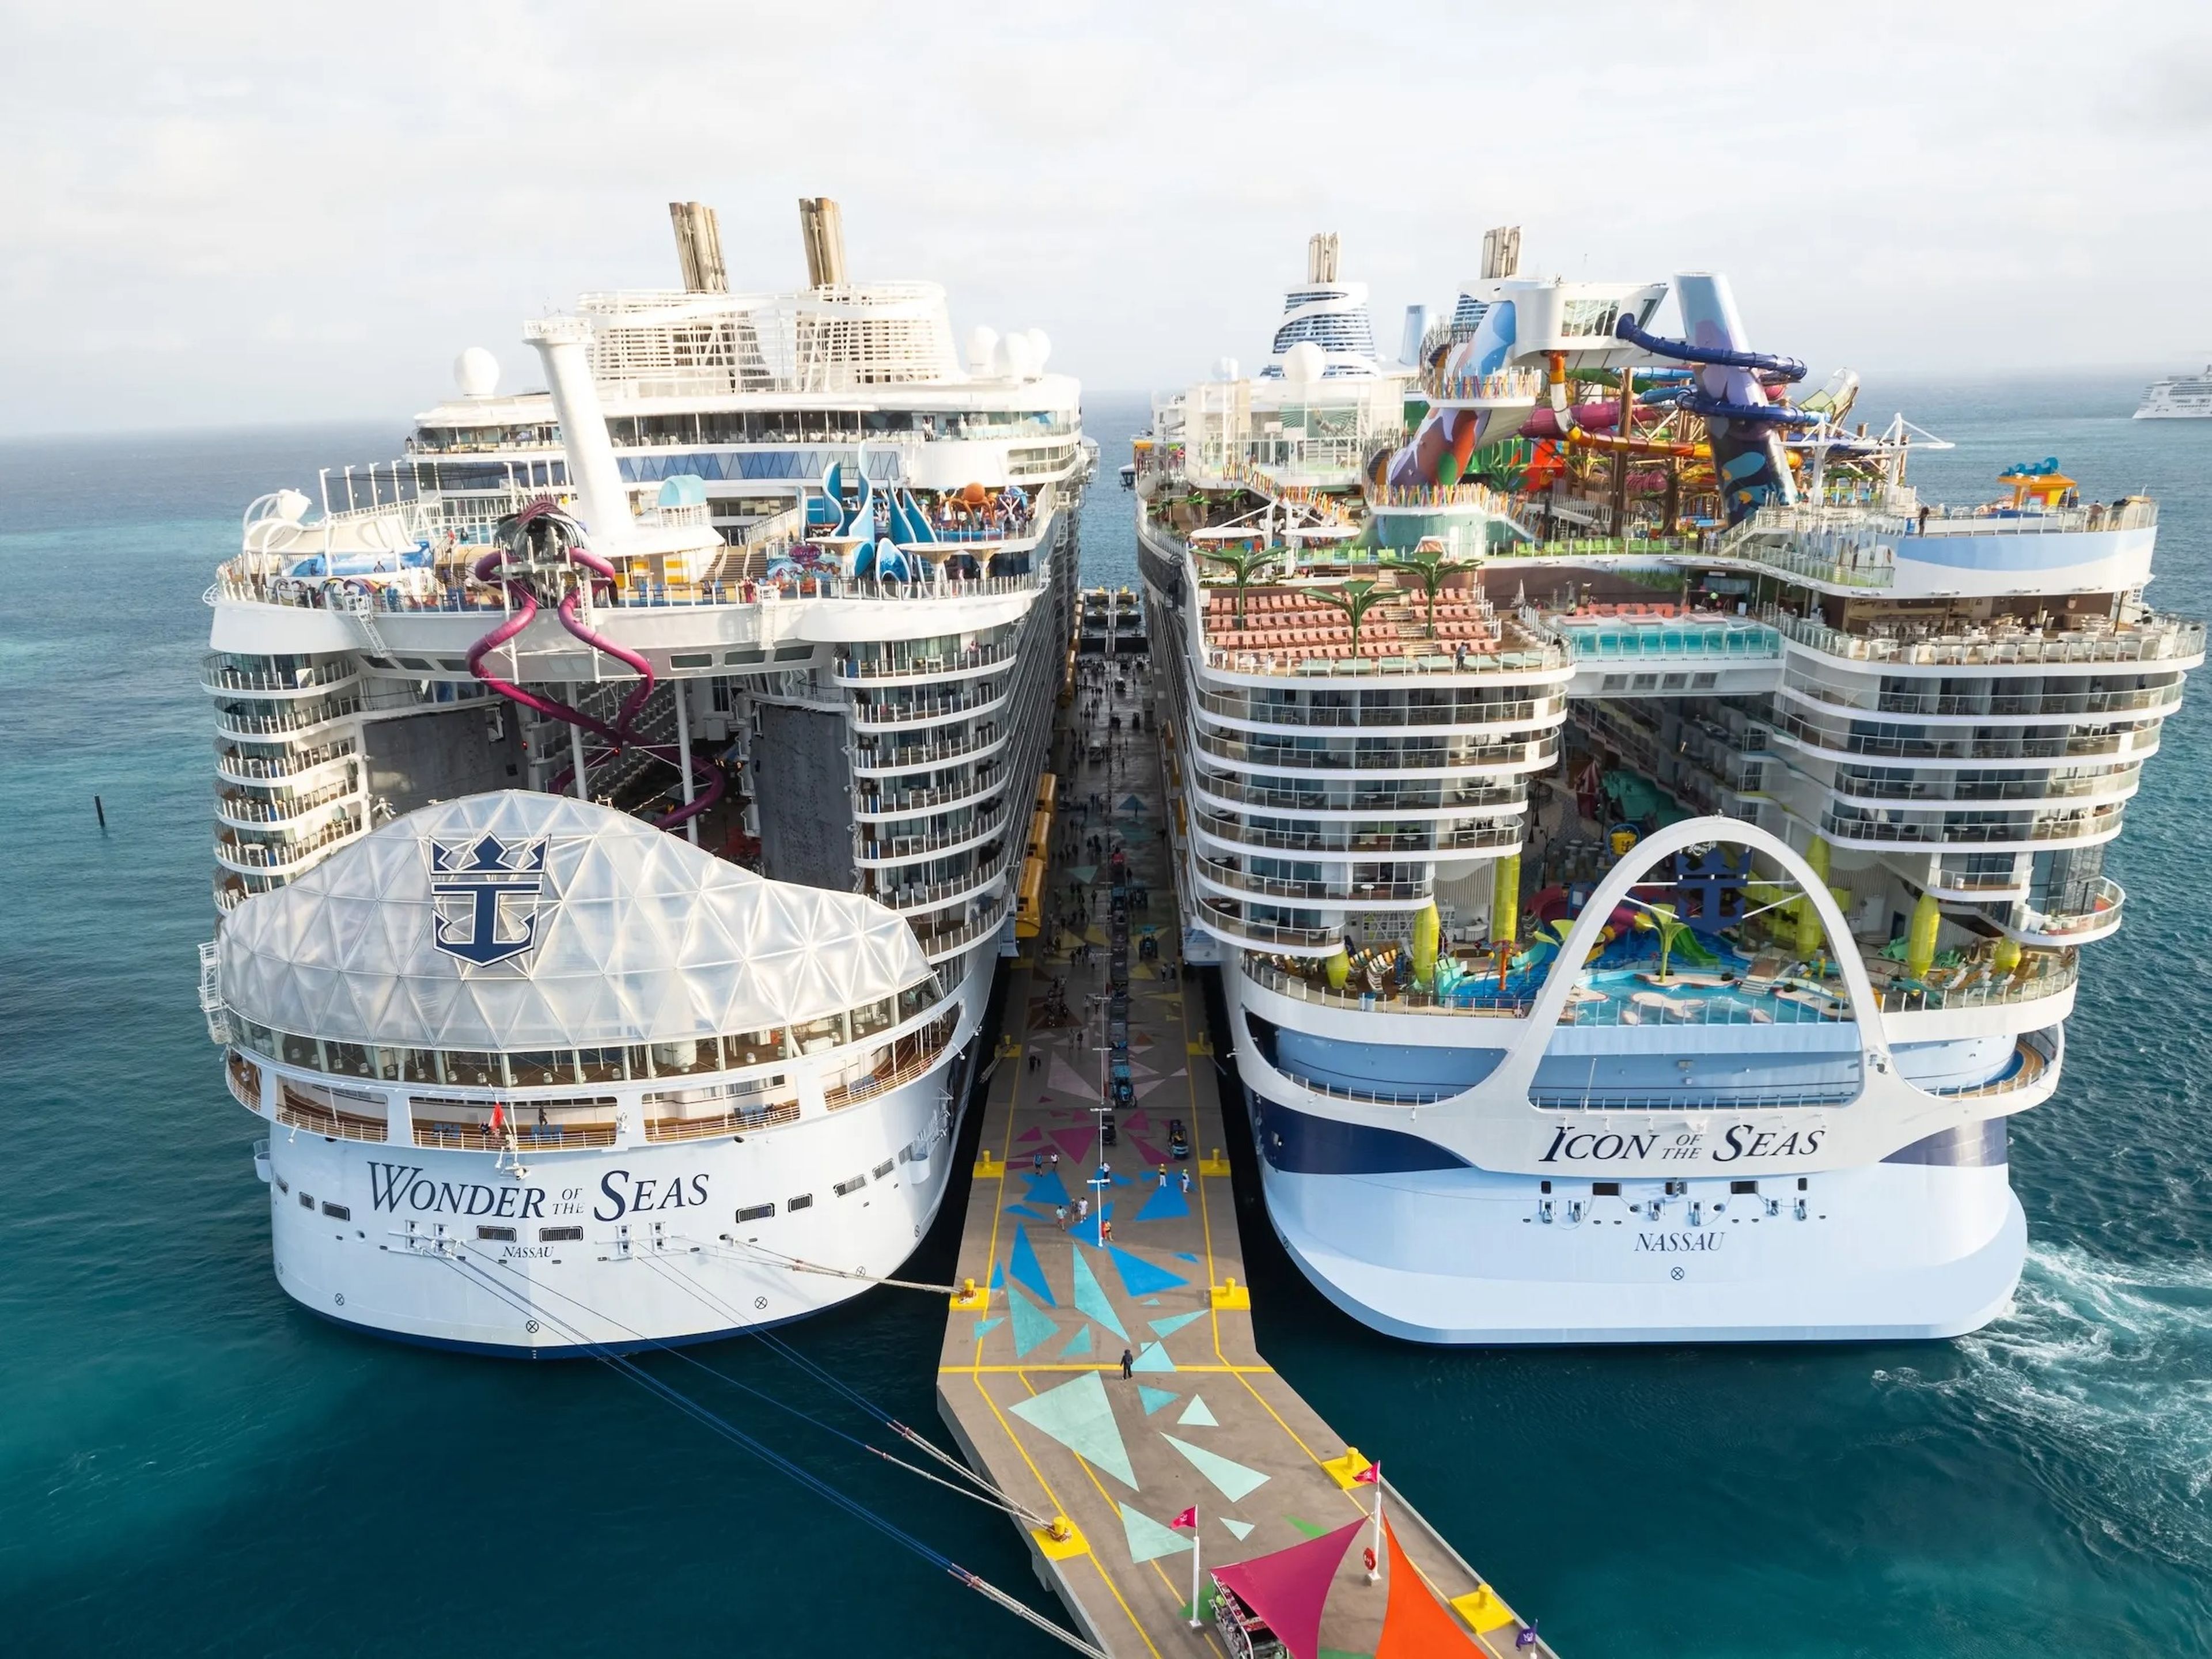 Royal Caribbean opera los dos cruceros más grandes del mundo, Wonder of the Seas e Icon of the Seas. Estos barcos están repletos de comodidades, pero no son para todo el mundo.